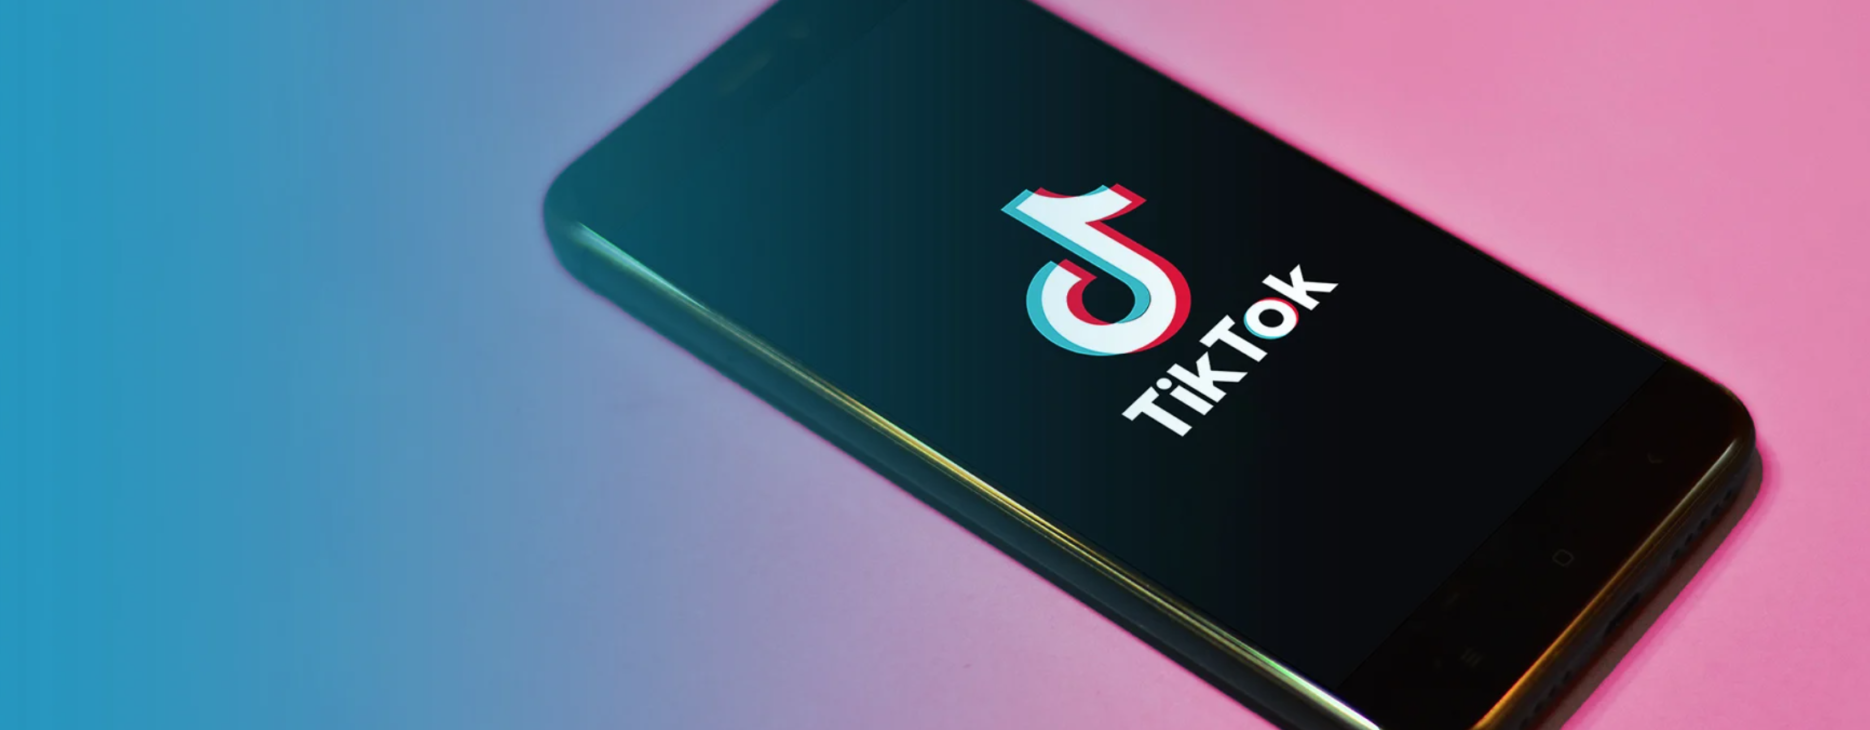 TikTok phone screen